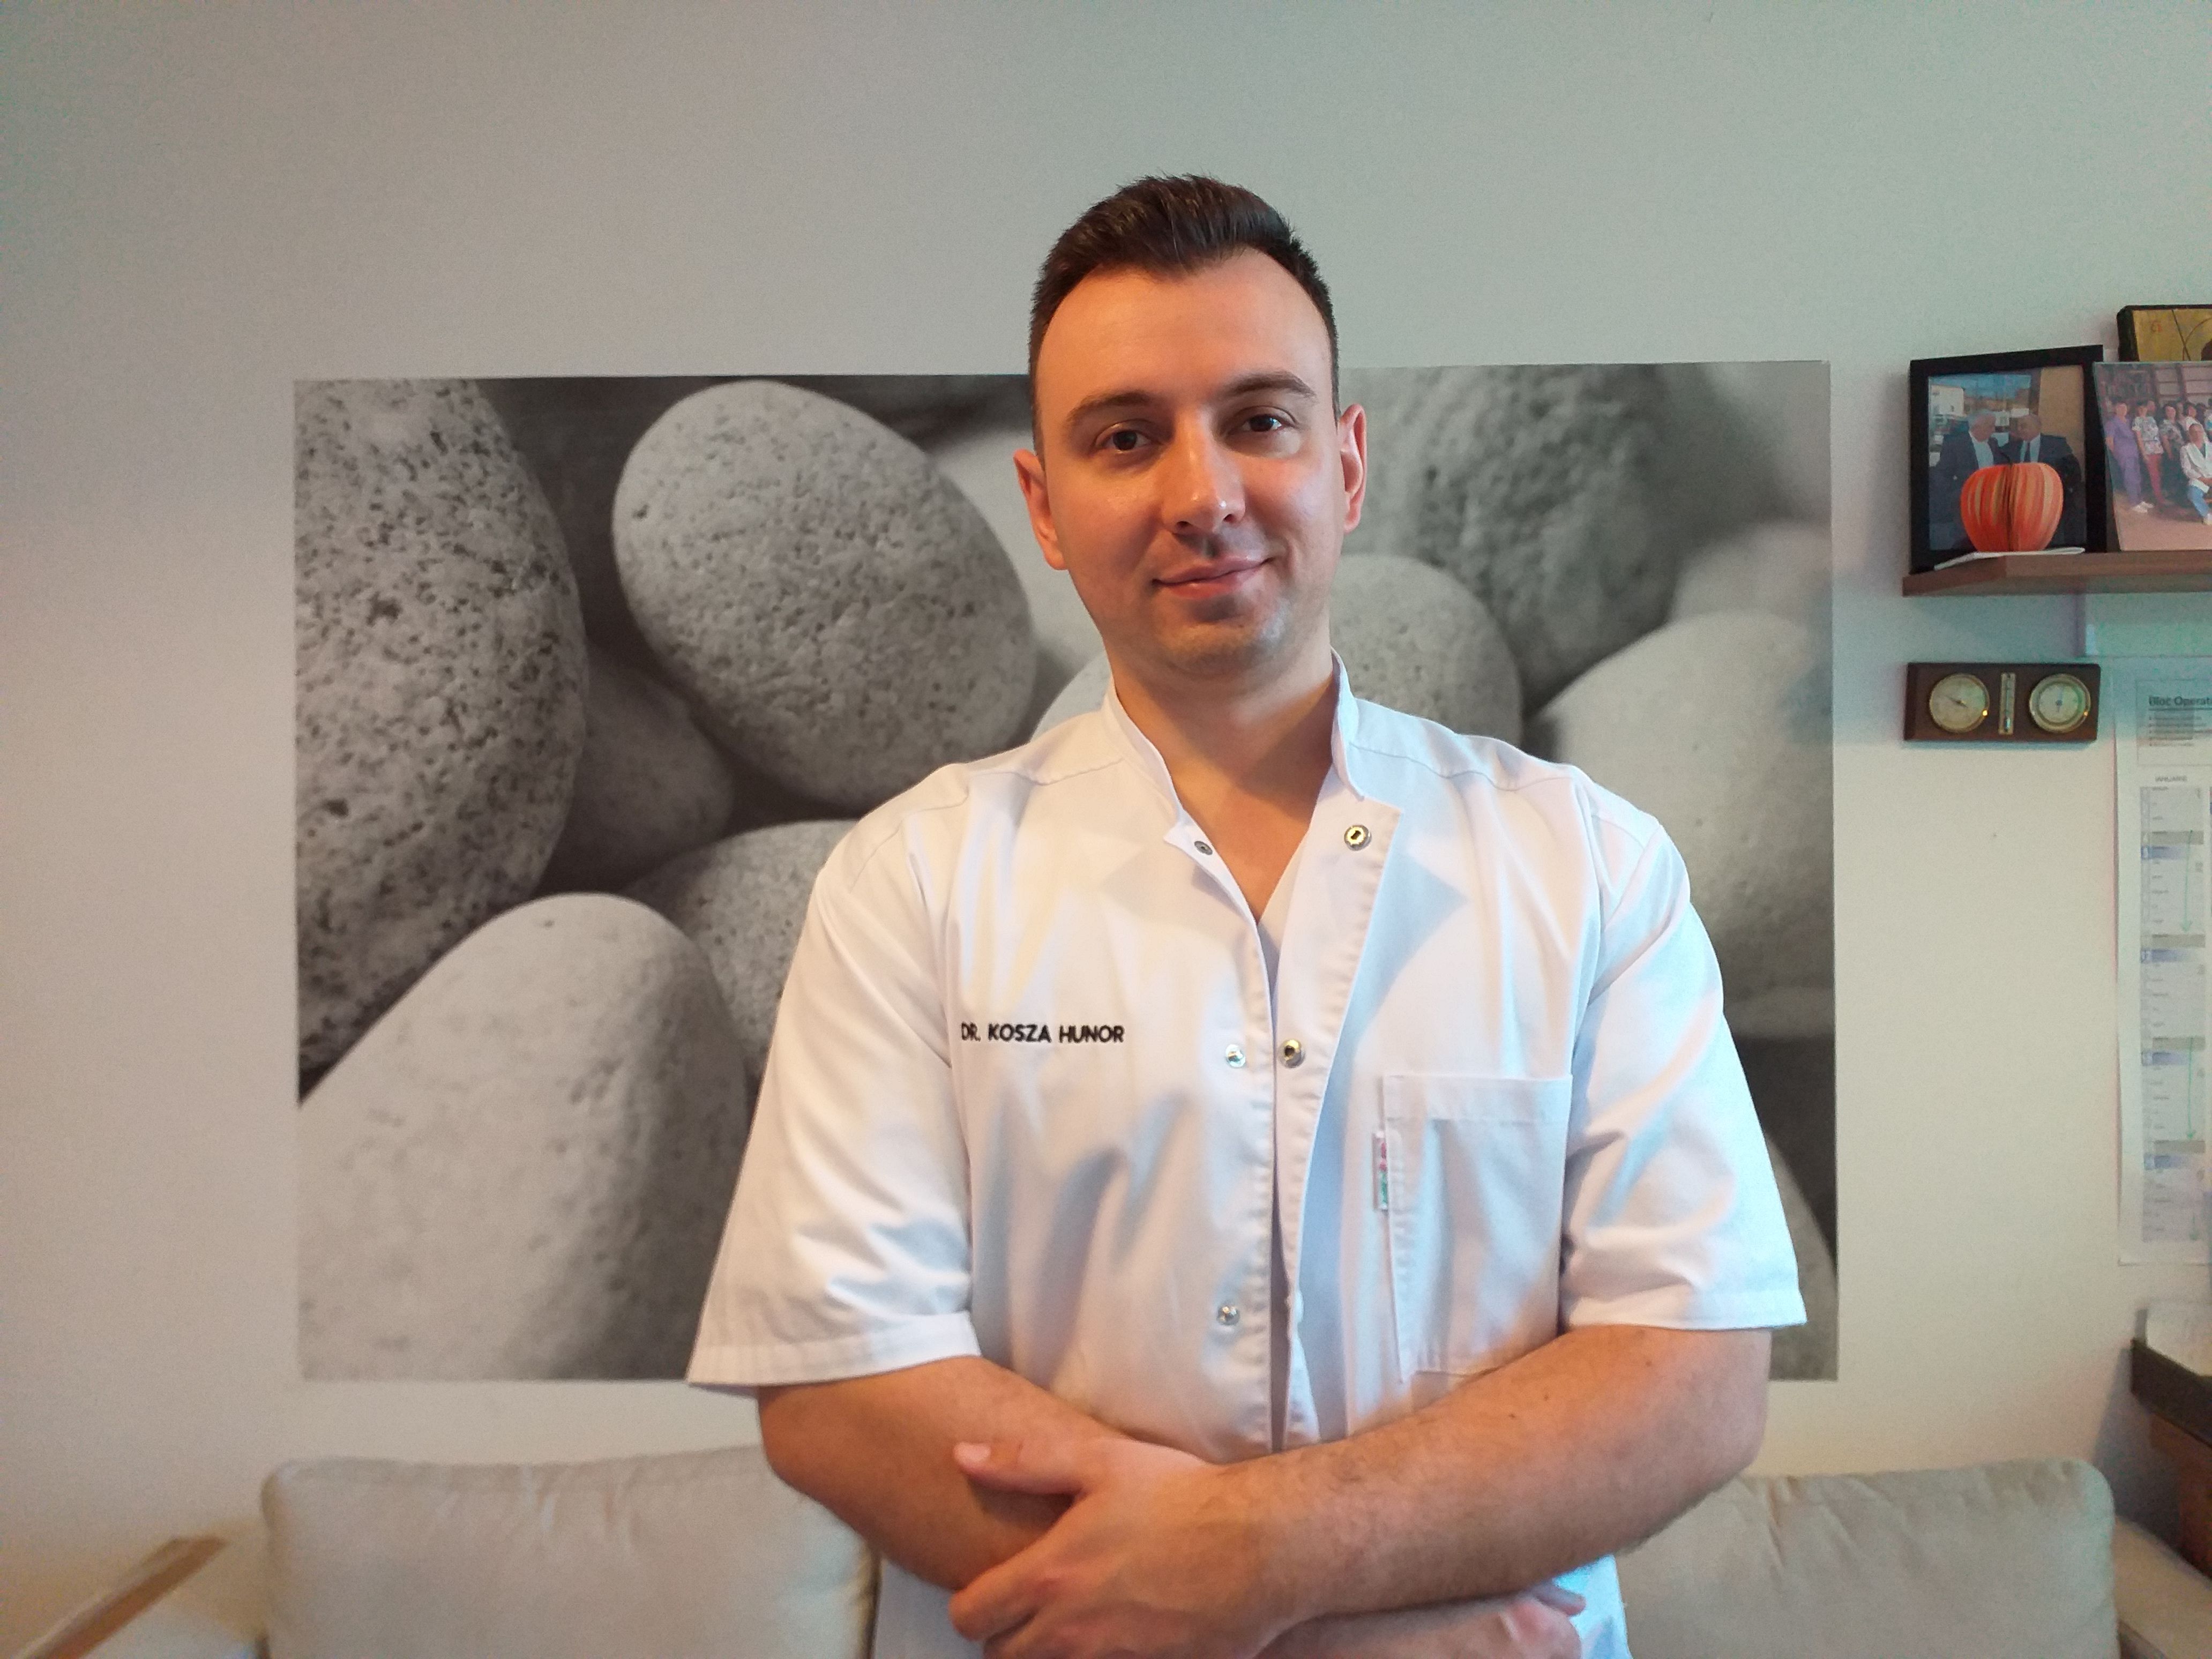 Beszélgetés dr. Kosza Hunor urológus szakorvossal: Nem kell megvárni,  amíg már tünetek jelentkeznek